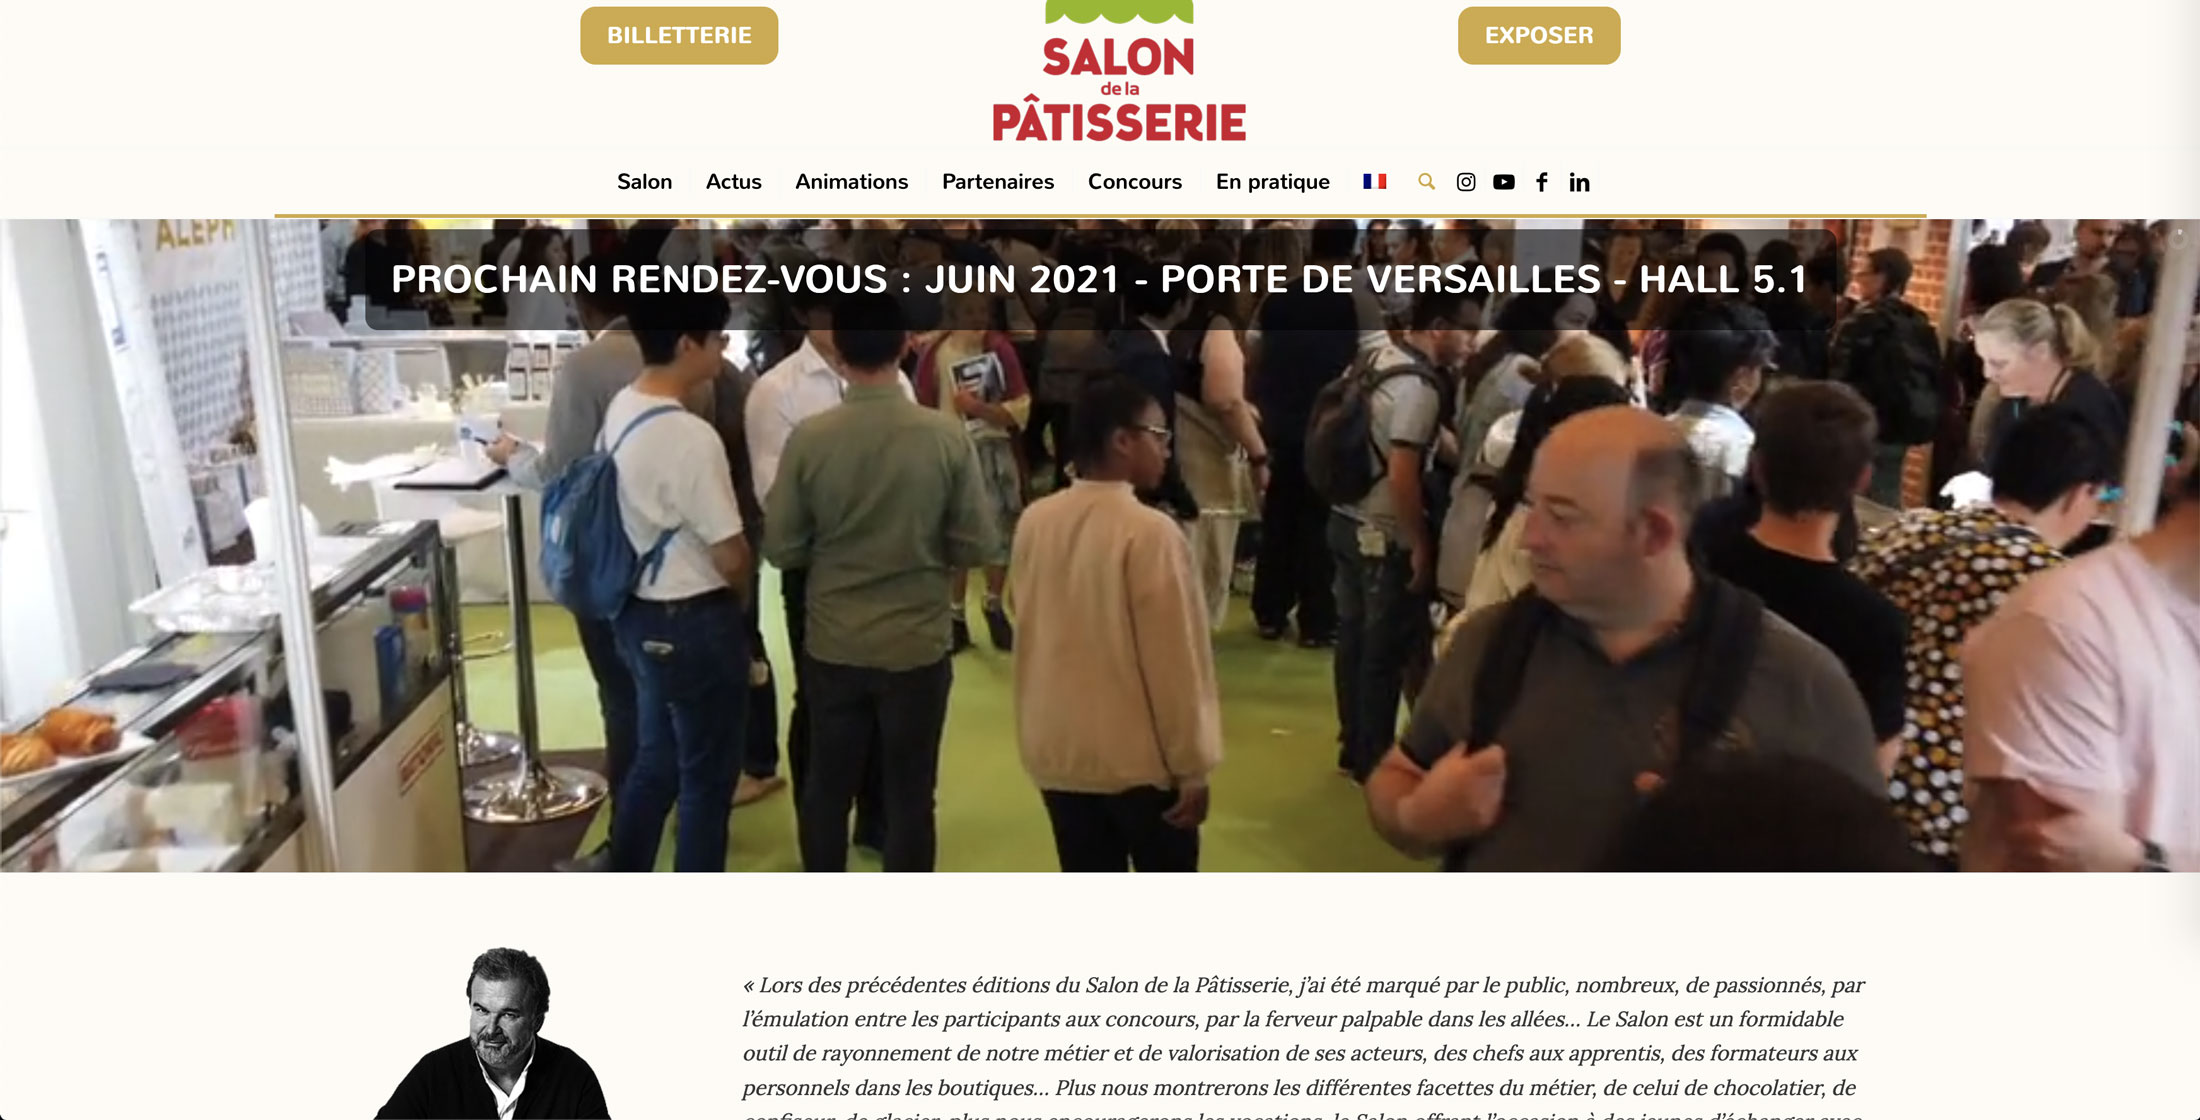 Image du site web réalisé par Nostromo, agence de communication, pour le Salon de la Pâtisserie